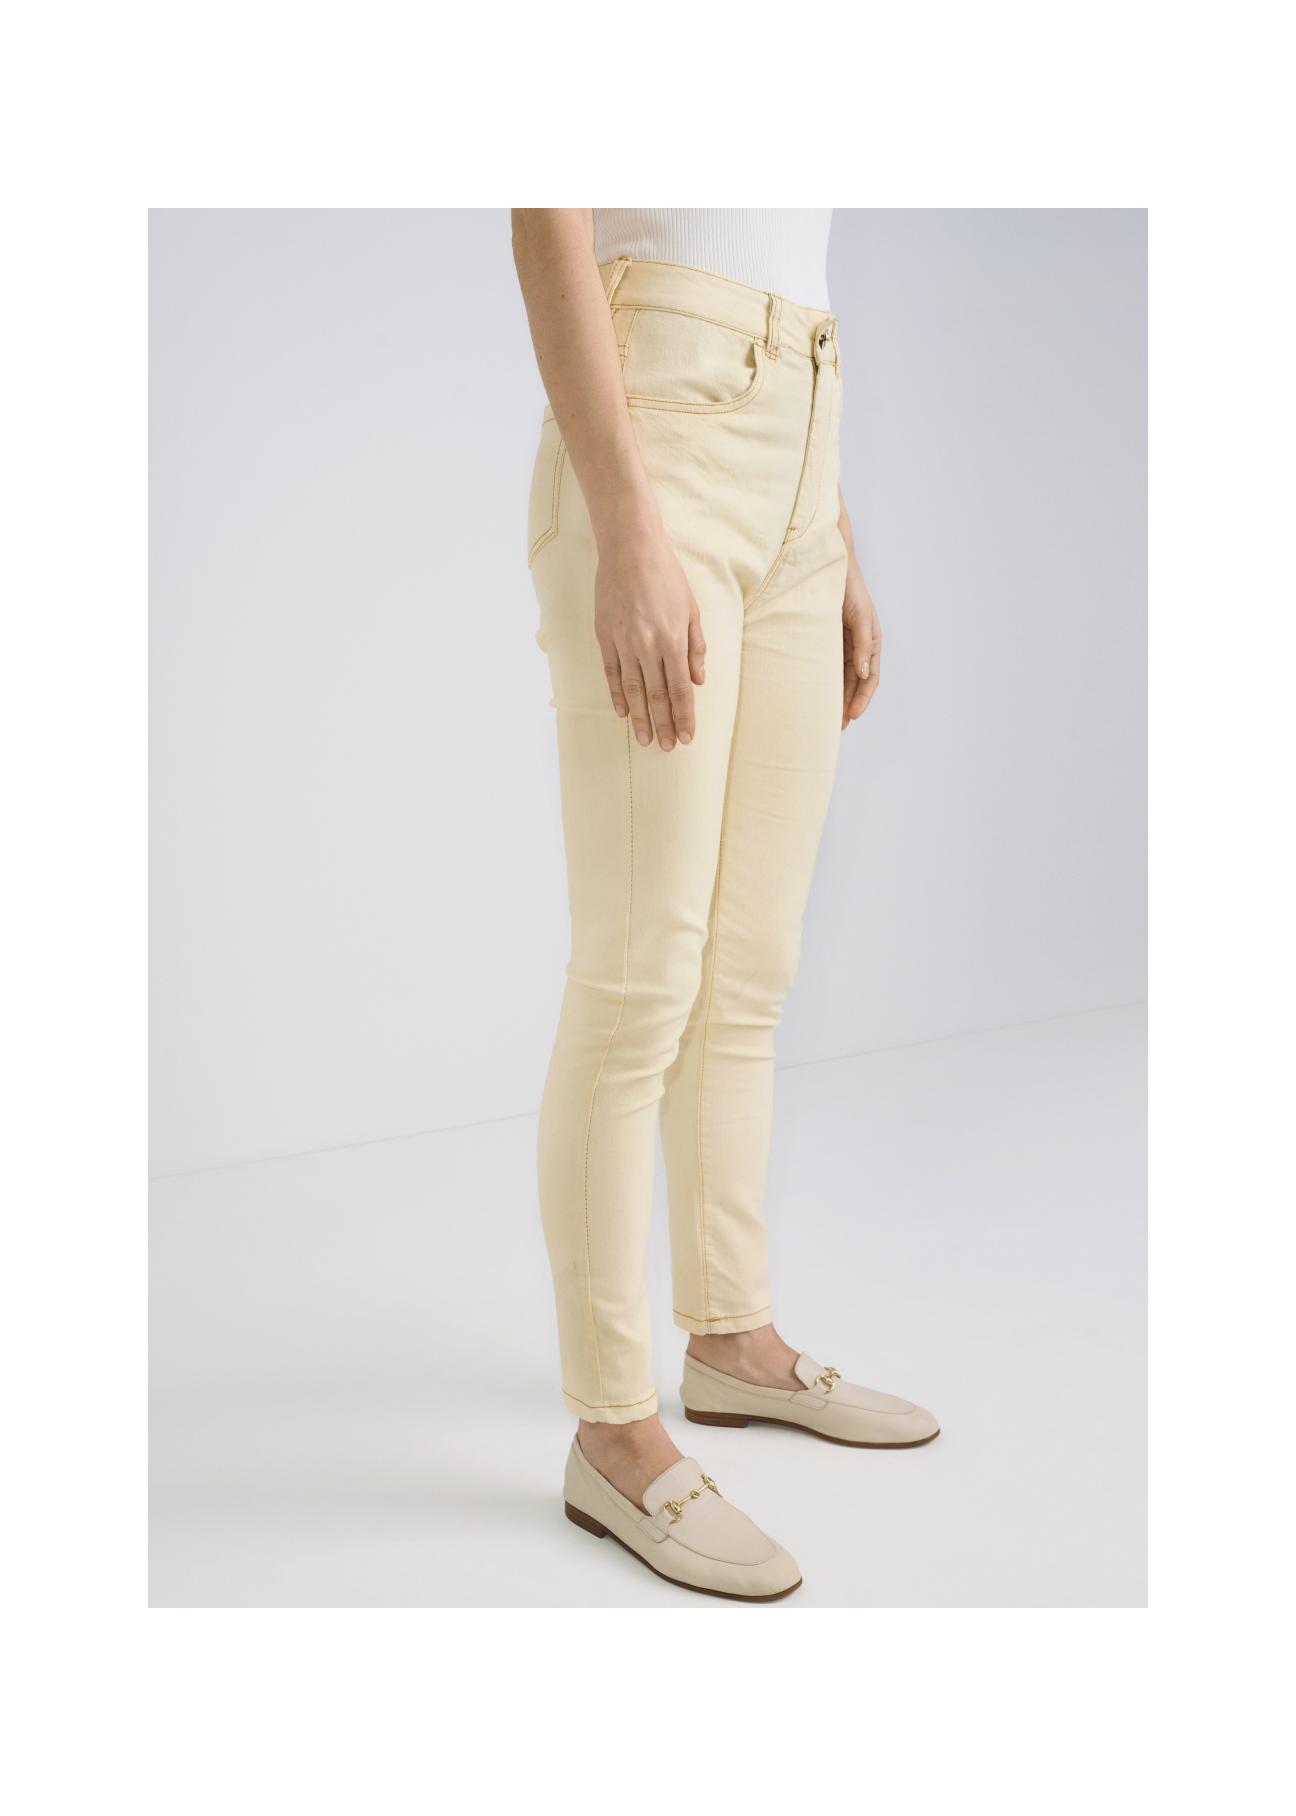 Kremowe spodnie jeansowe damskie JEADT-0005-11(W22)